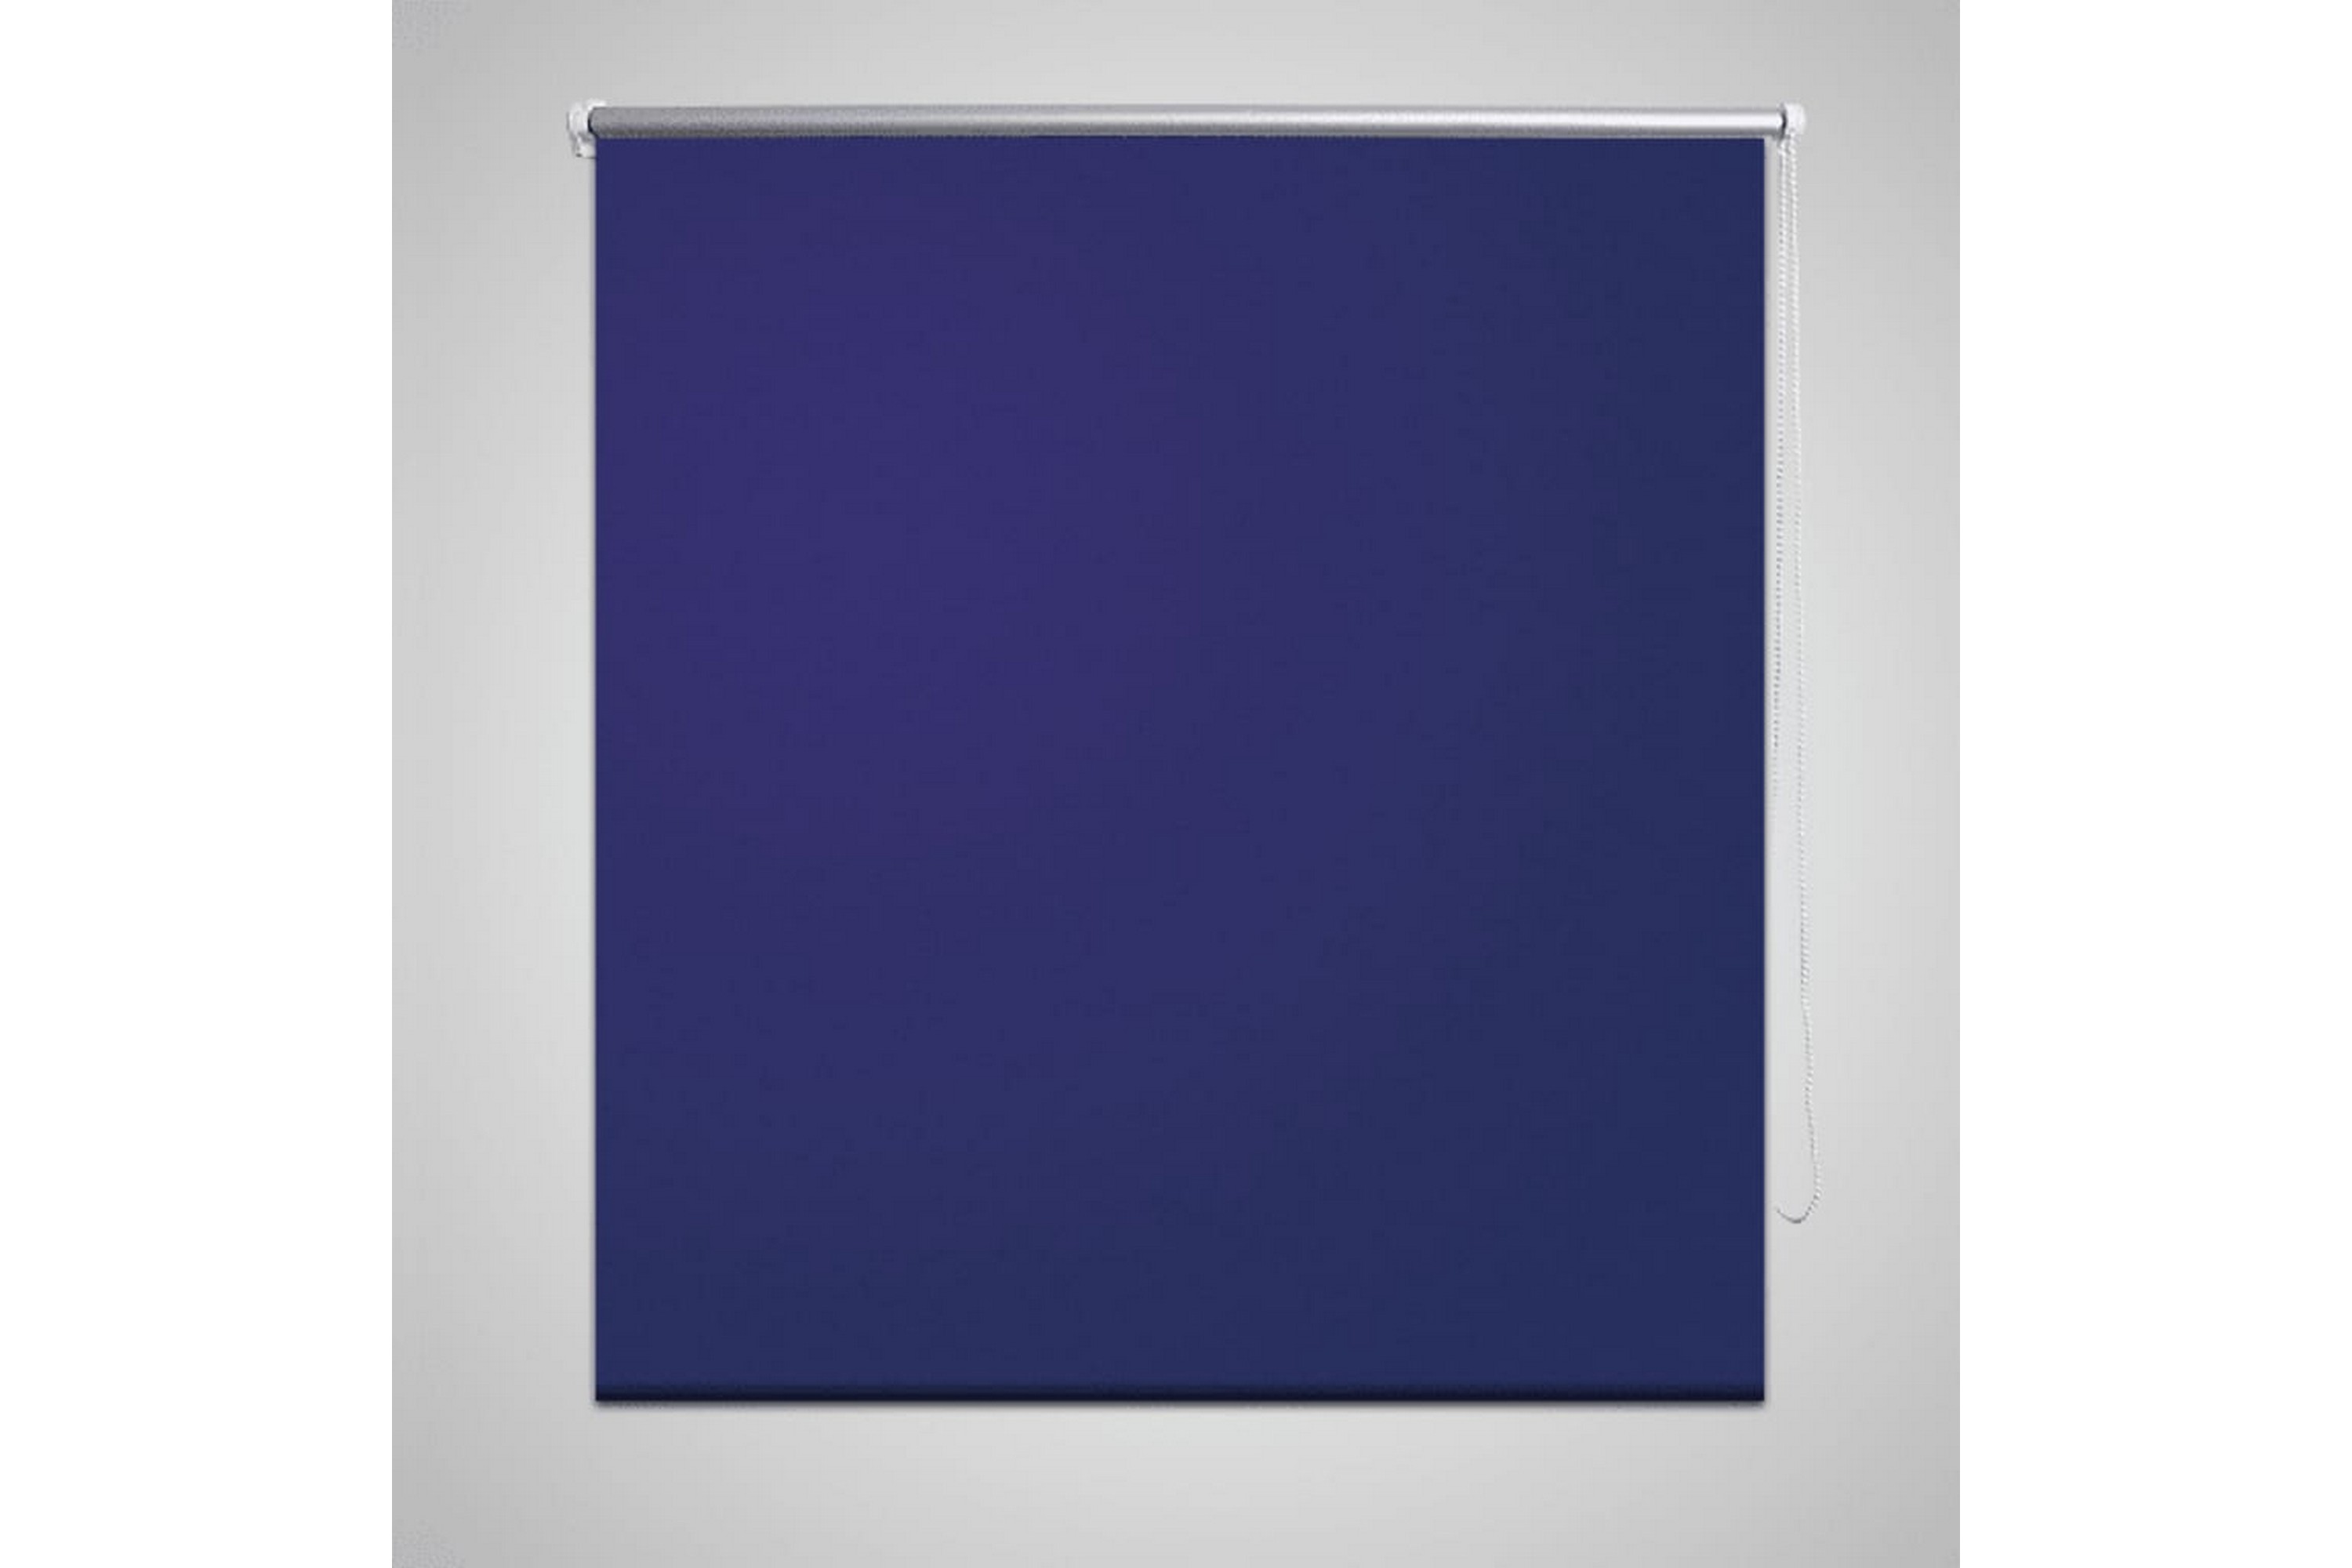 Pimentävä rullaverho 100x230 cm Merensininen - Sininen